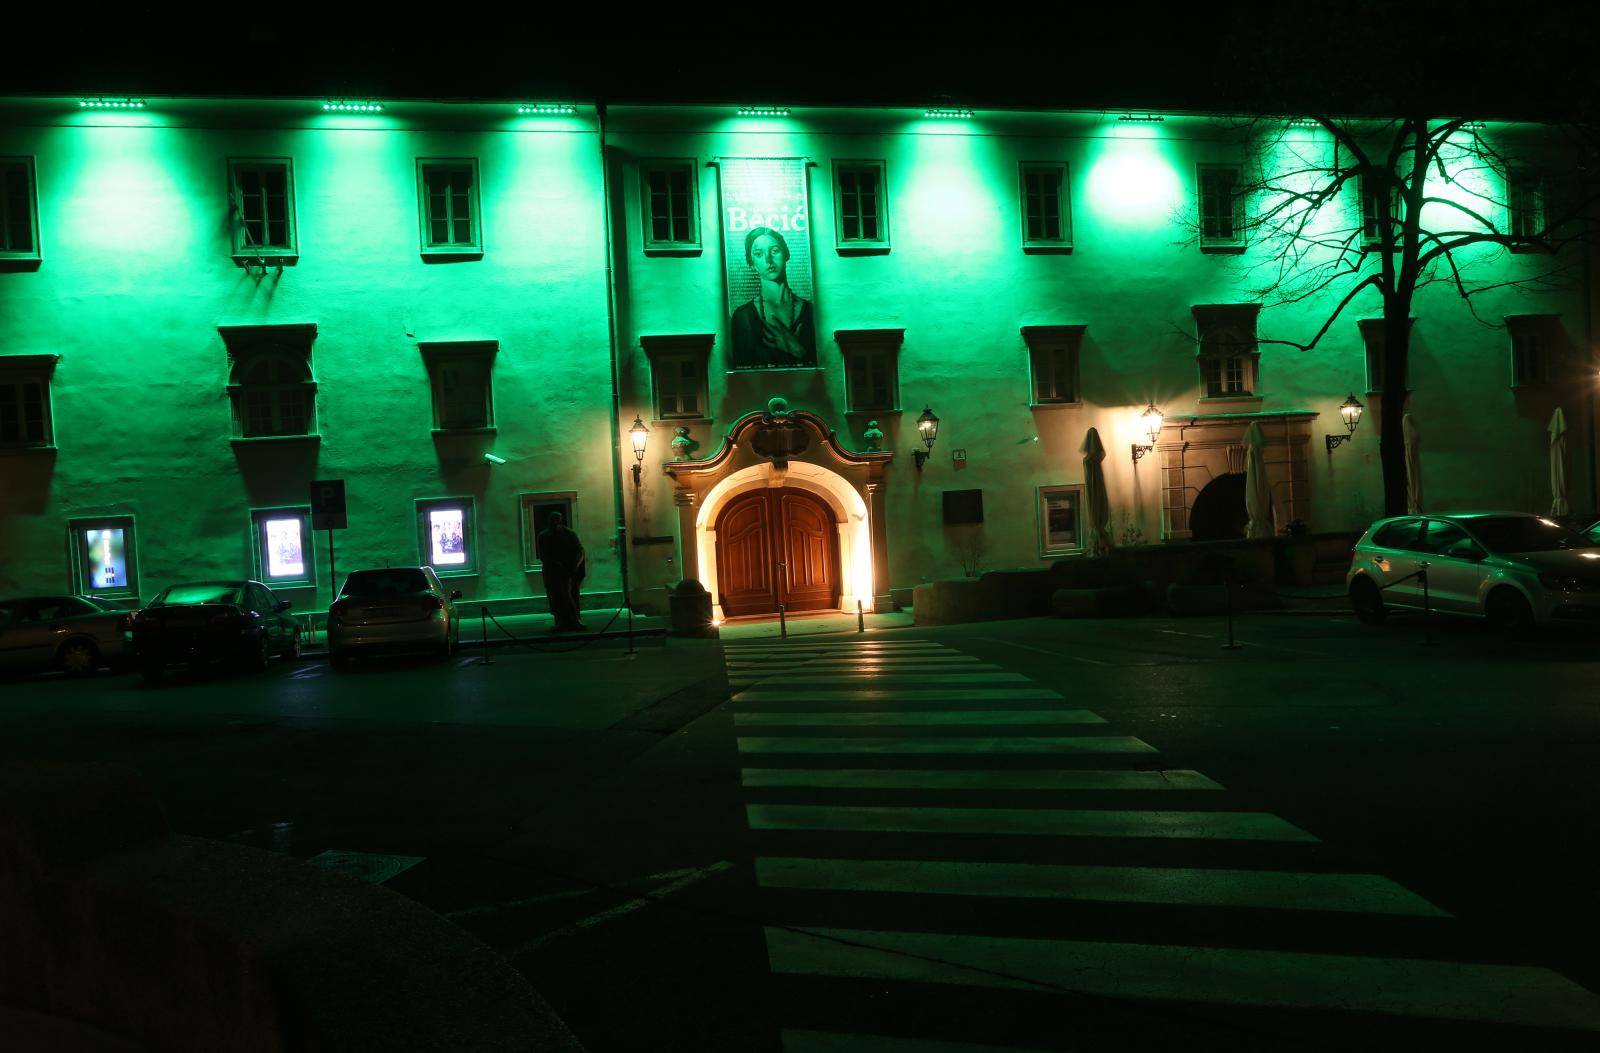 Zagreb: Klovicevi dvori obojeni zeleno za Dan sv. Patrika